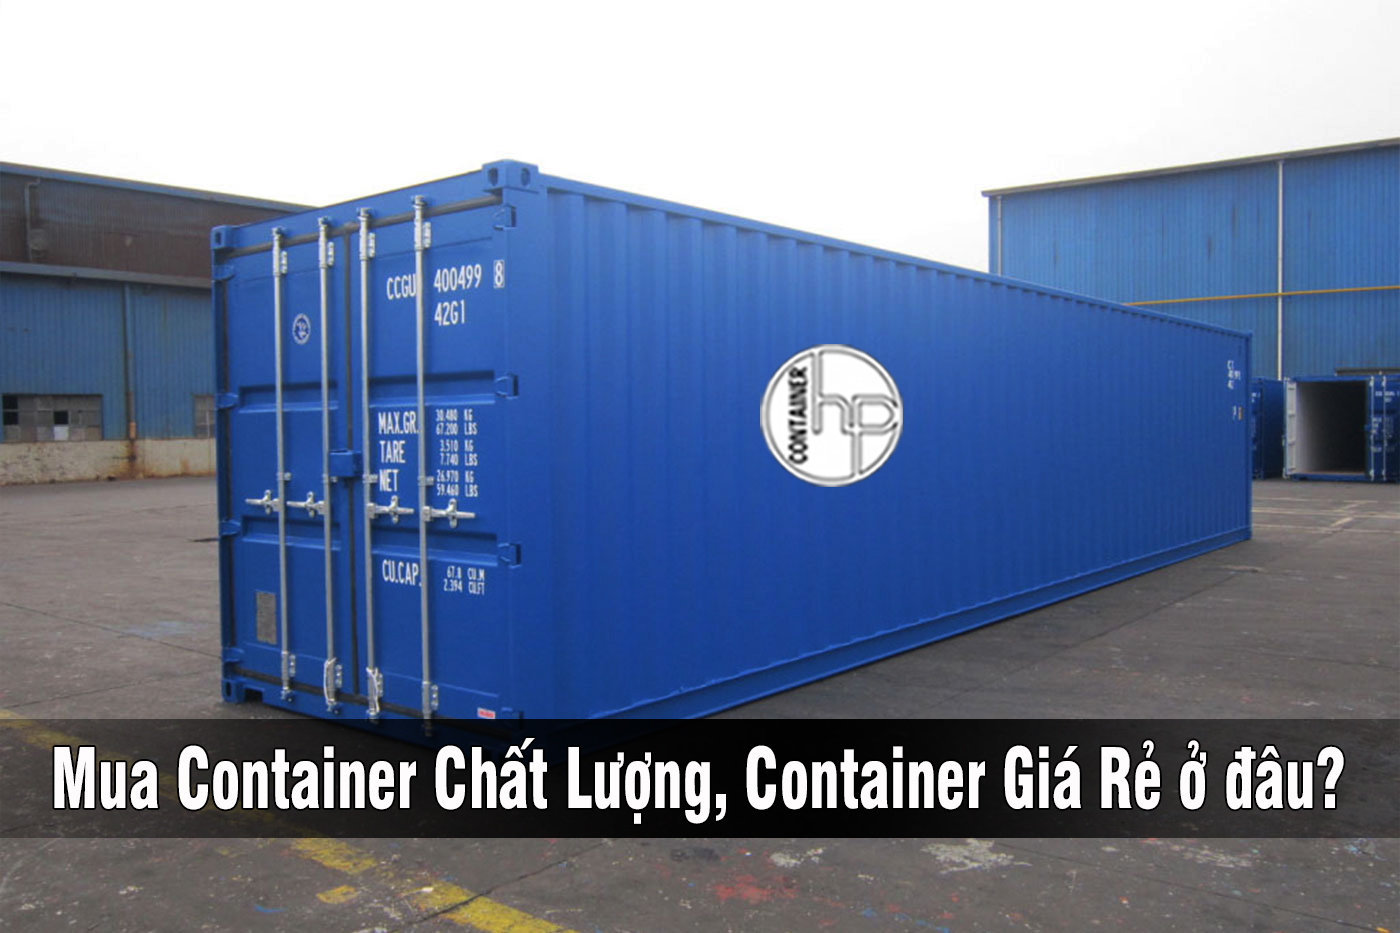 Top 1 địa chỉ bán container cũ giá rẻ tại Hà Nội uy tín chất lượng tốt - Ảnh 2